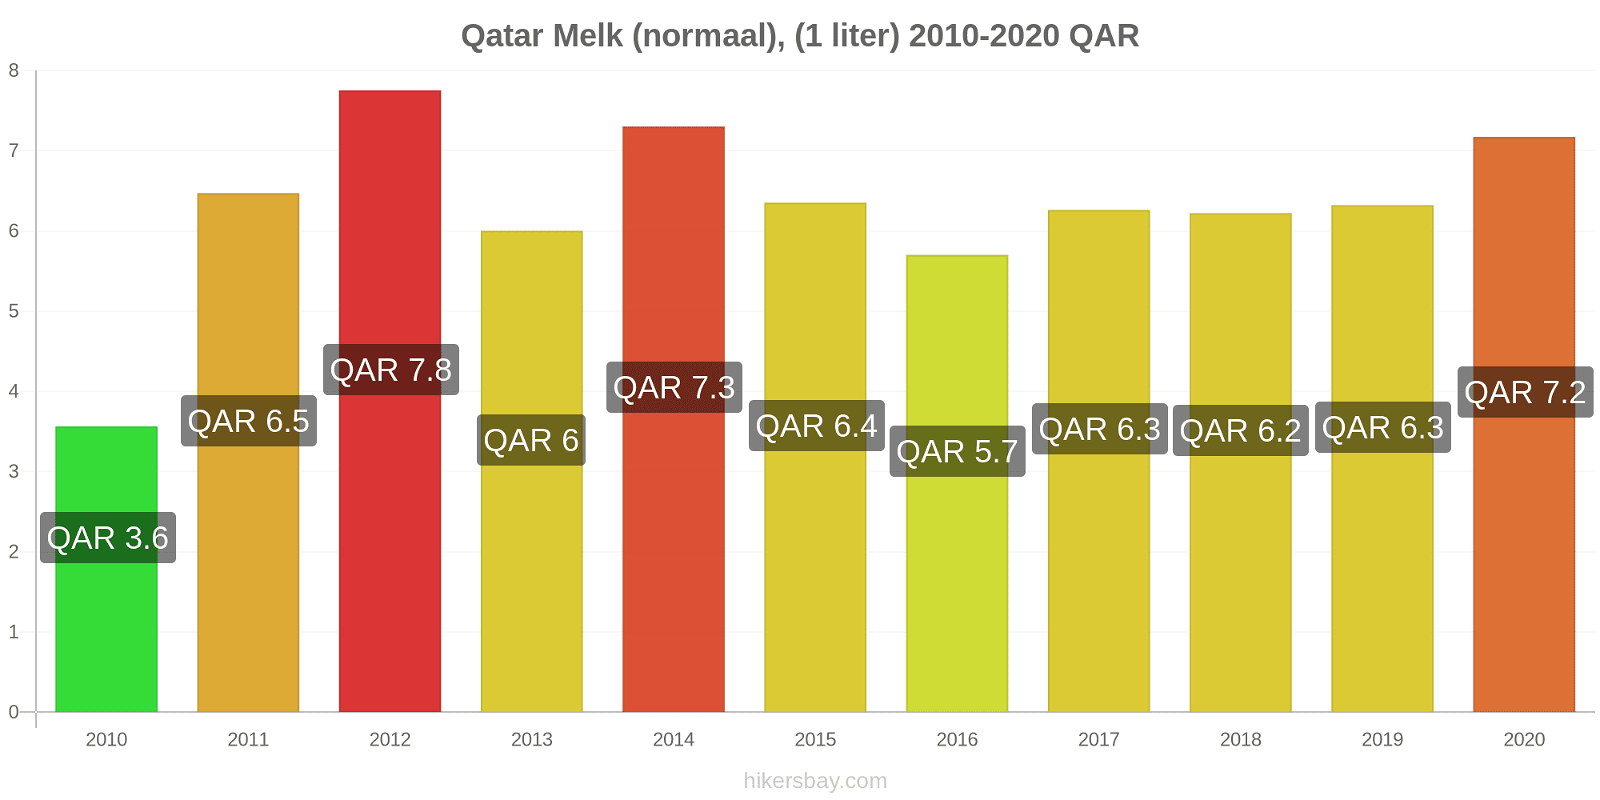 Qatar prijswijzigingen Melk (regelmatige), (1 liter) hikersbay.com